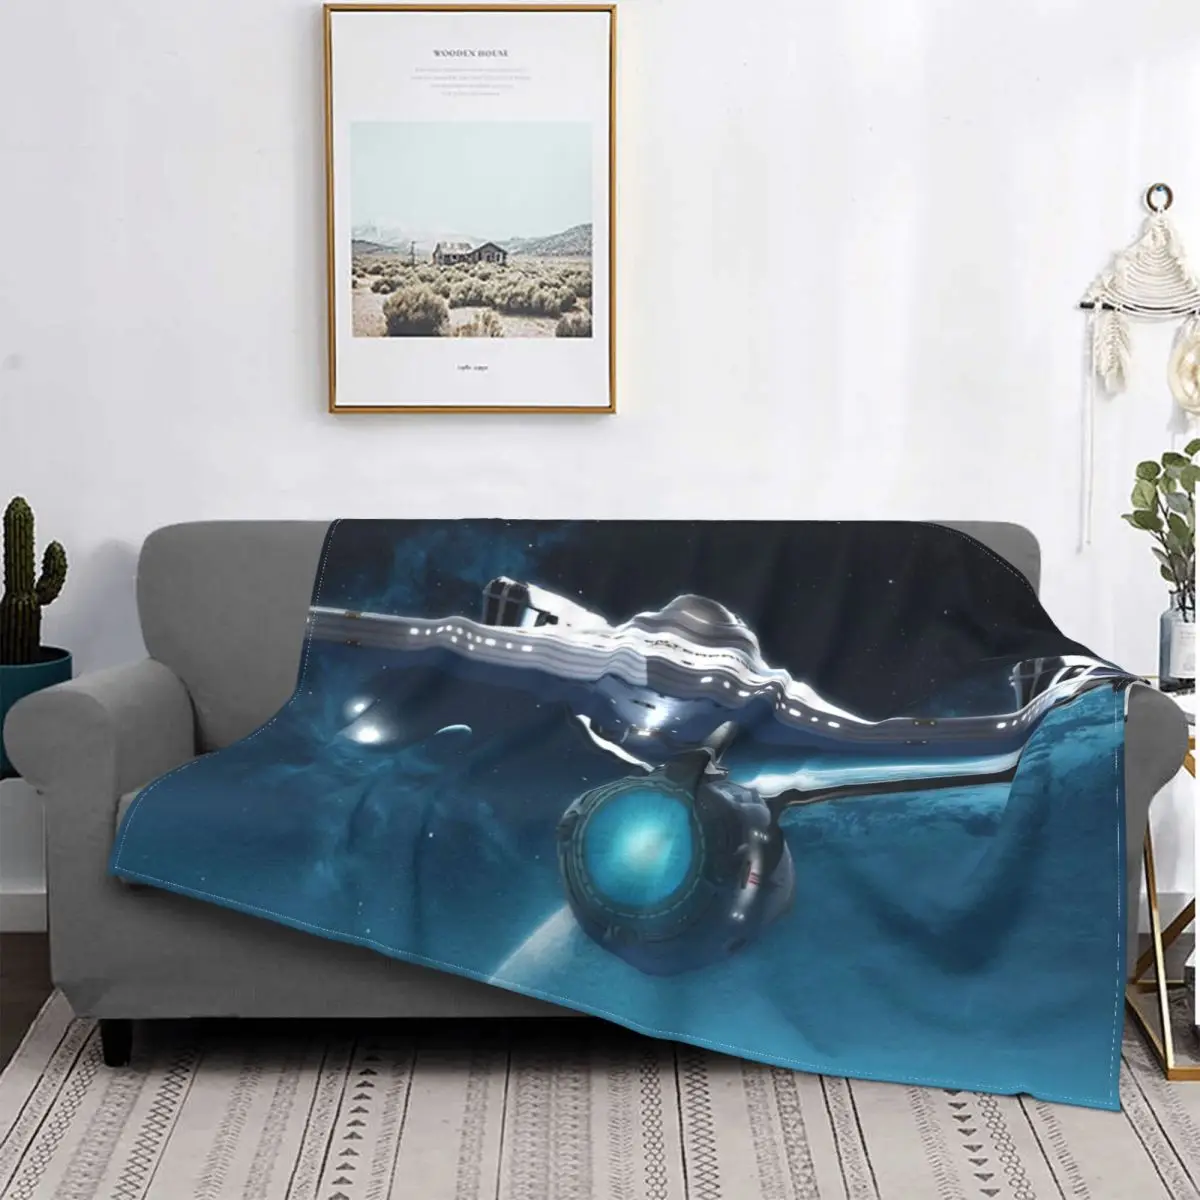 

Портативные теплые одеяла Star Trek с изображением Криса Пина, научной фантастики, фильмов, приключений, постельного белья, путешествий